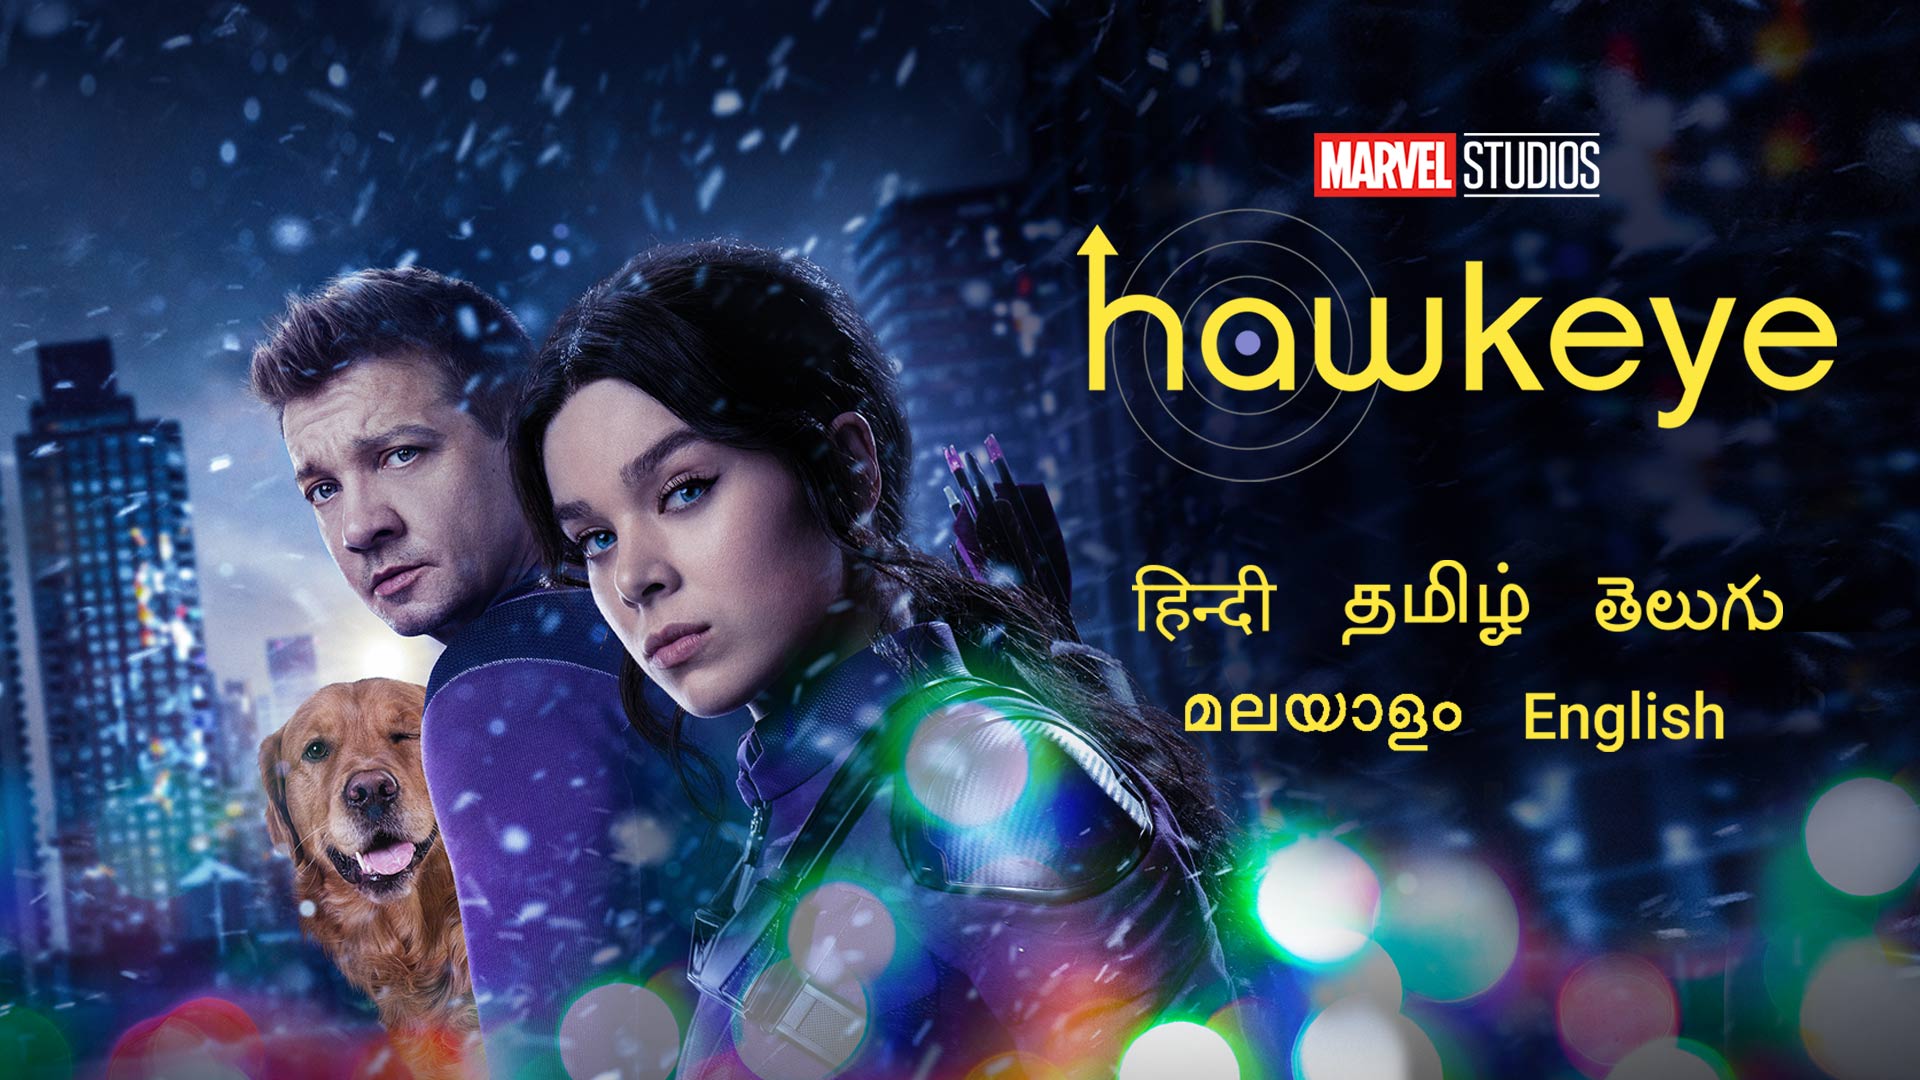 Hawkeye - [Season 1] HDRip Tamil Web Series Watch Online Free